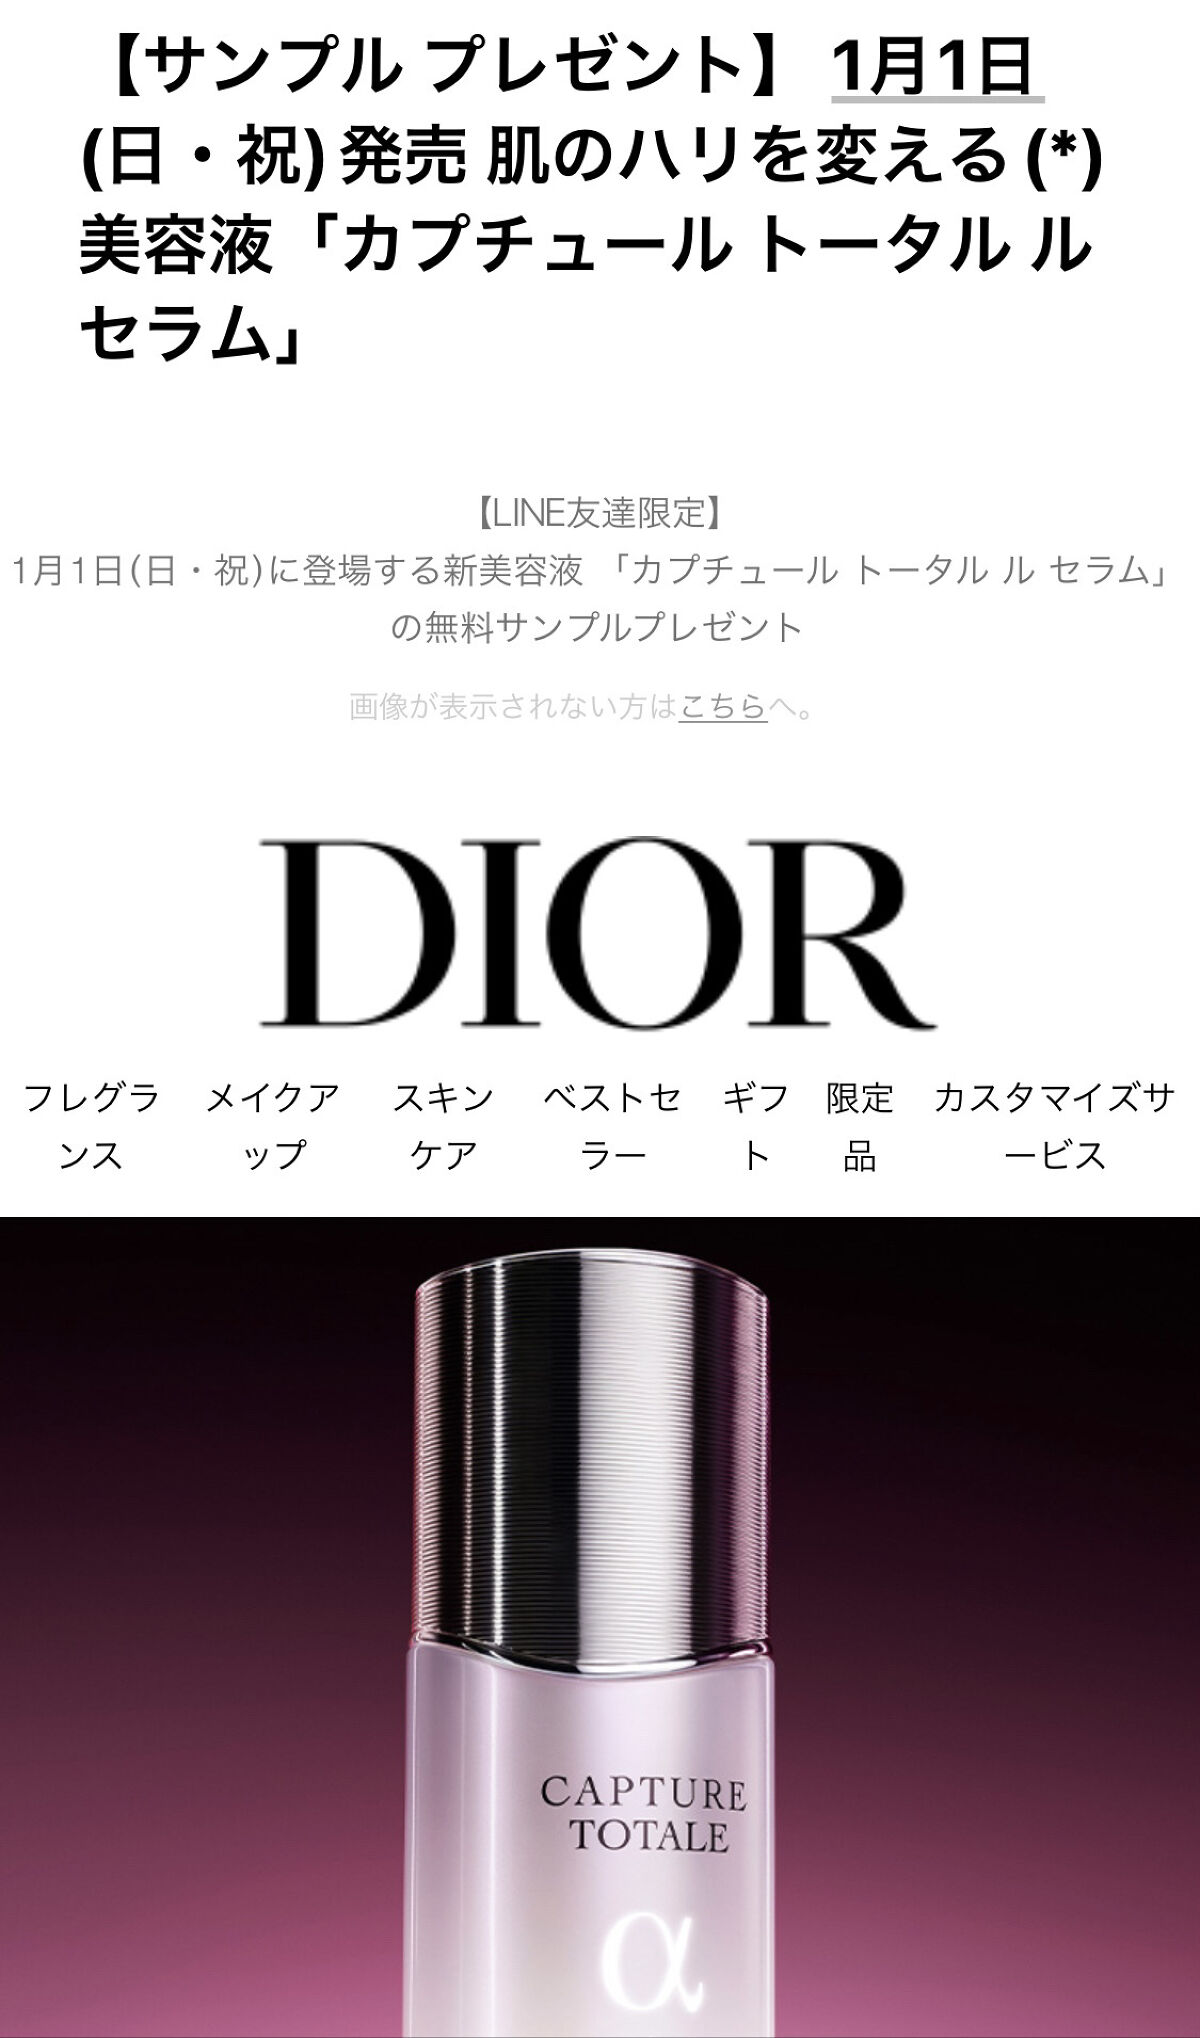 販売 Dior カプチュールトータルセラム50ml 1 1発売 drenriquejmariani.com